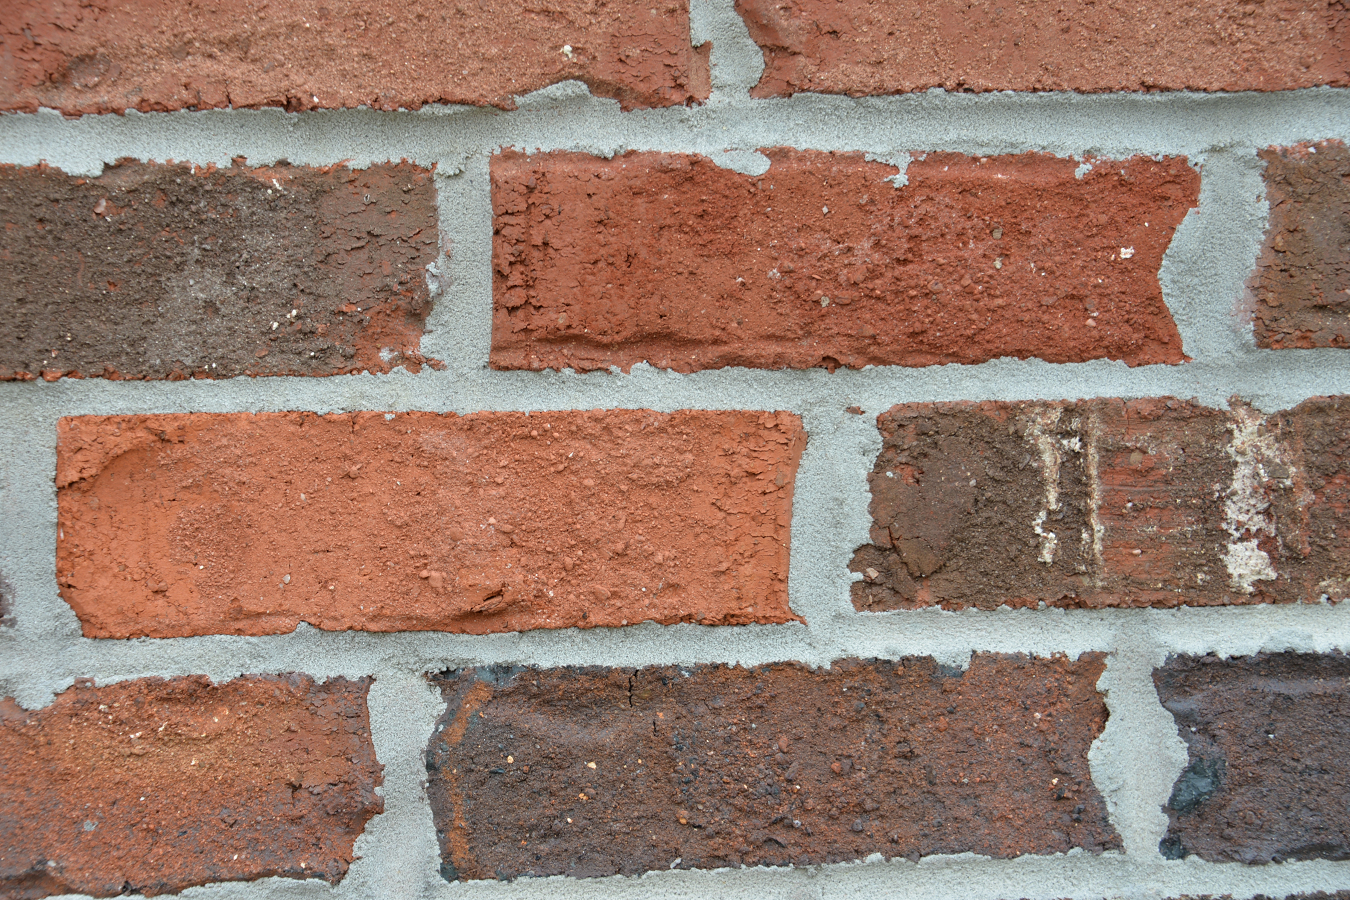 Brick and Mortar Wall - Score 78.33